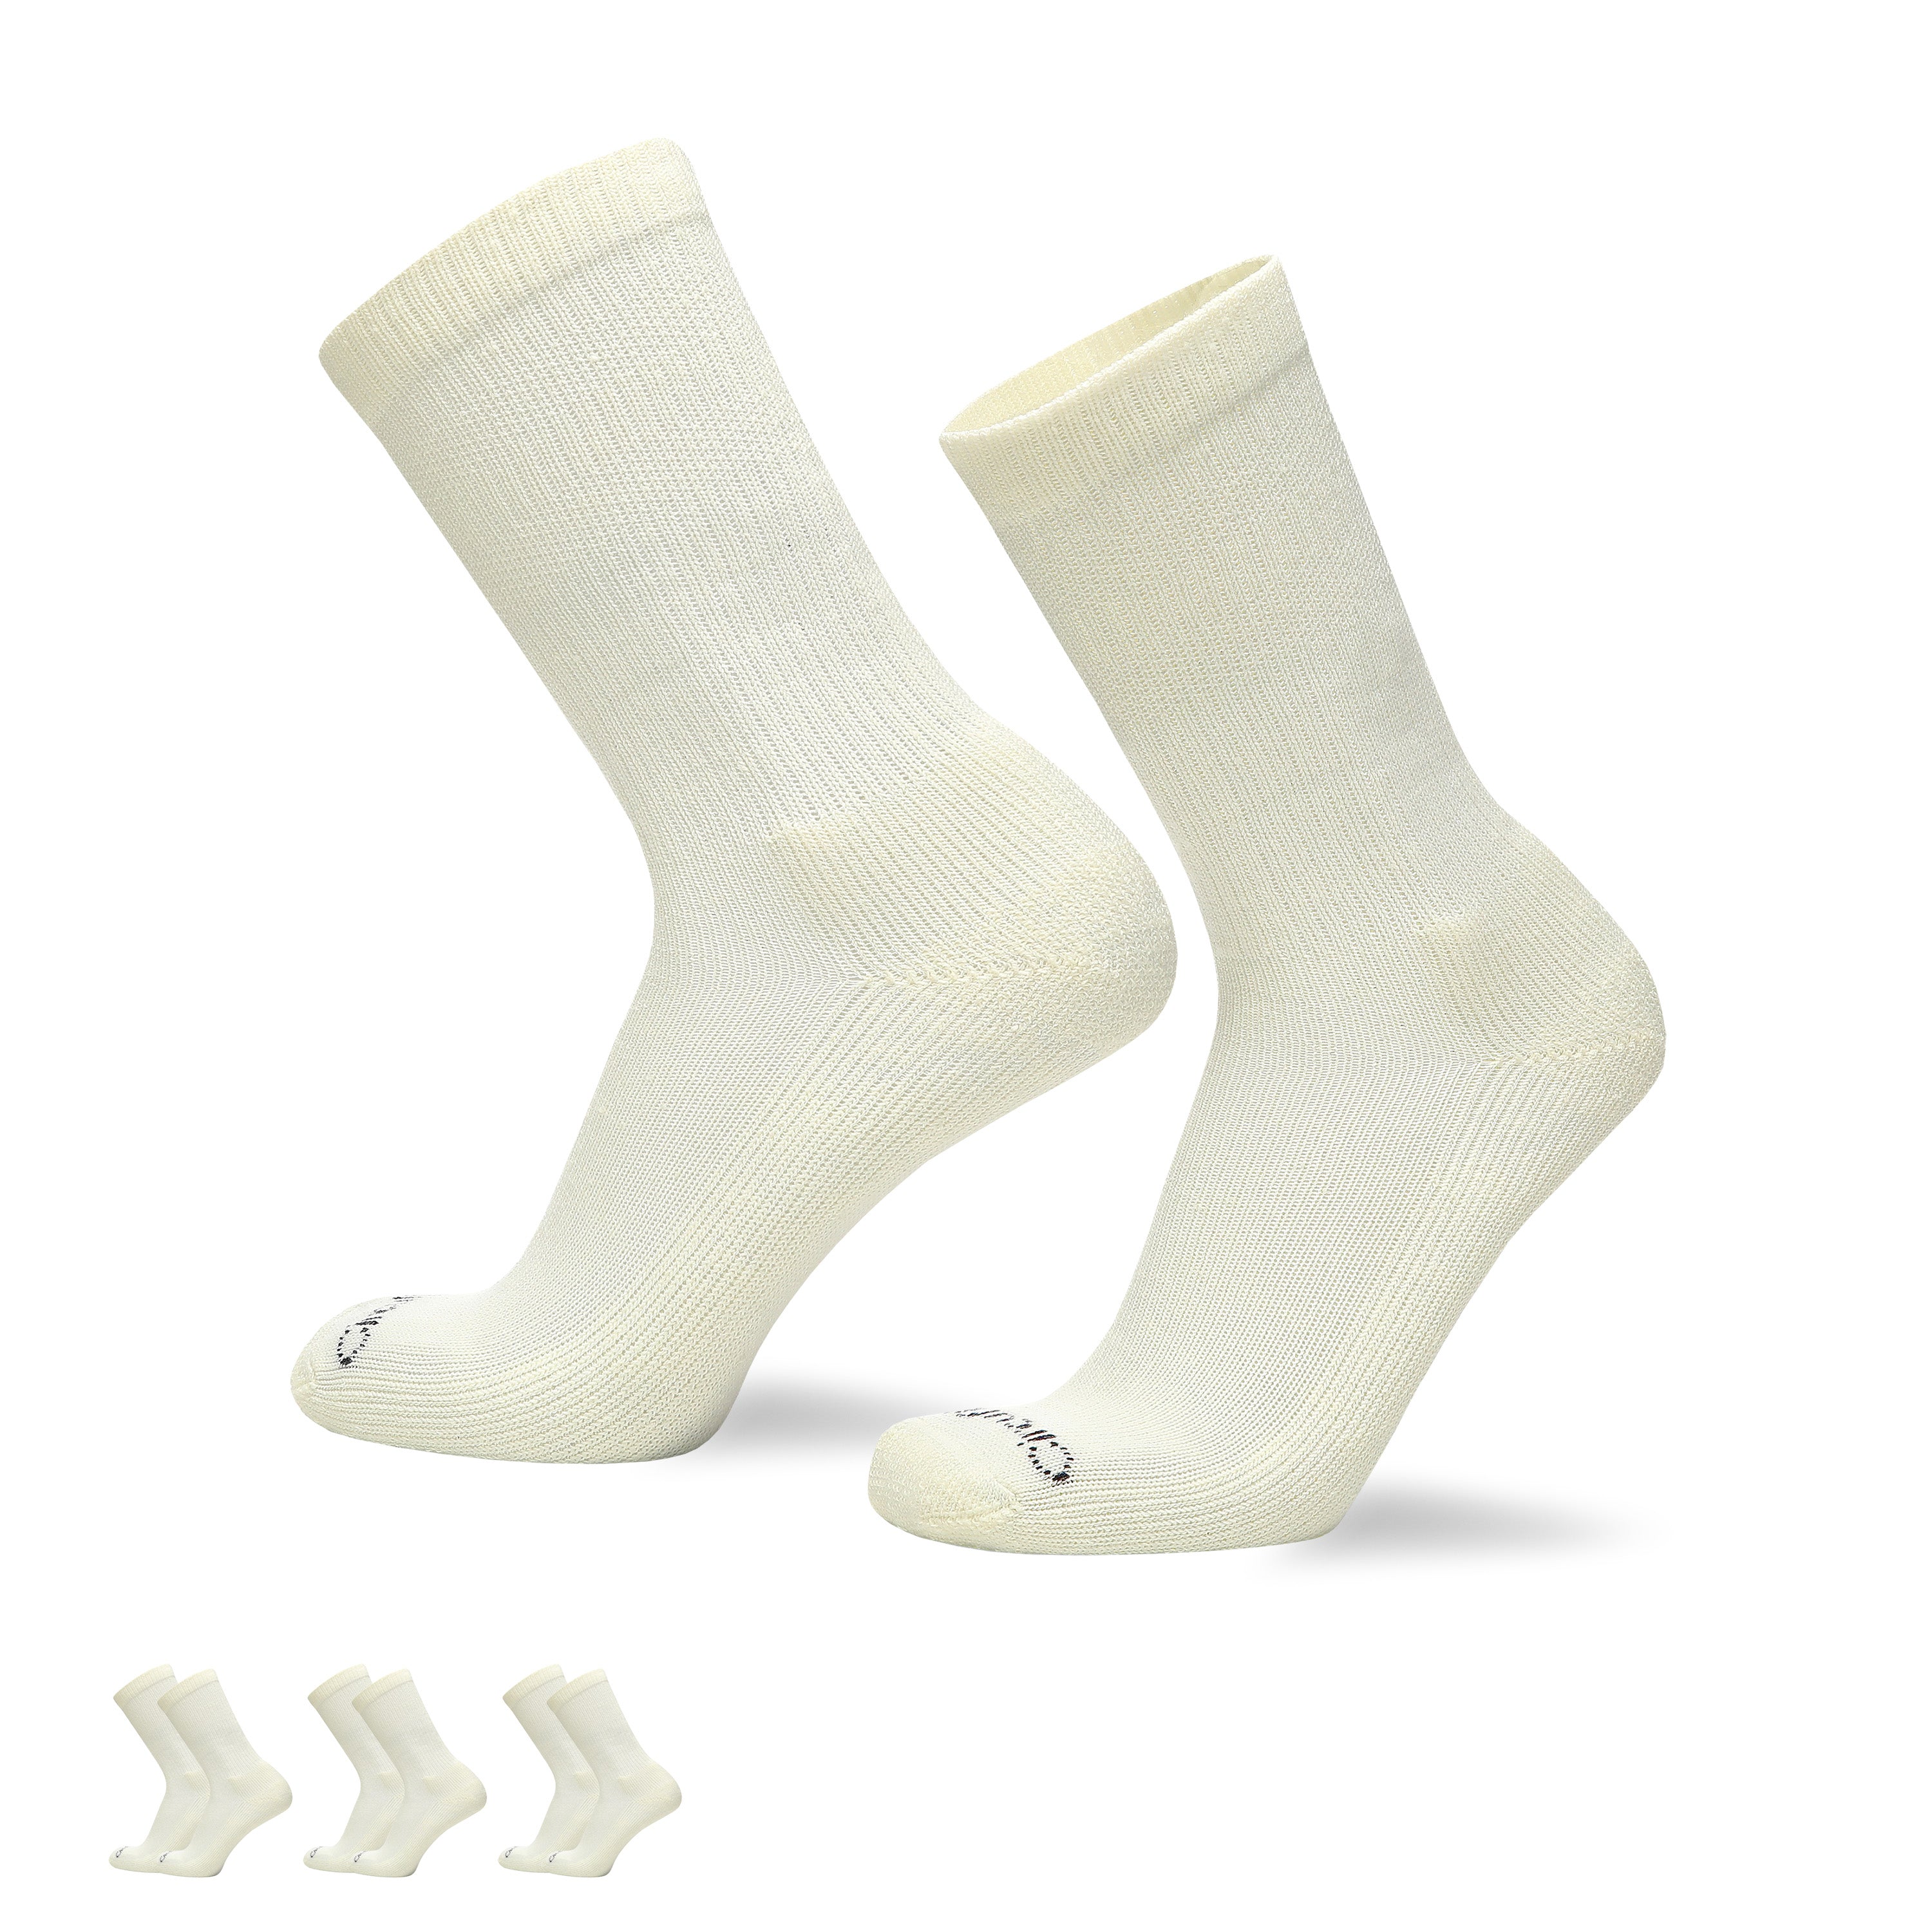 All-Day Diabetic Low Cut Socks 3-Pack - Circufiber